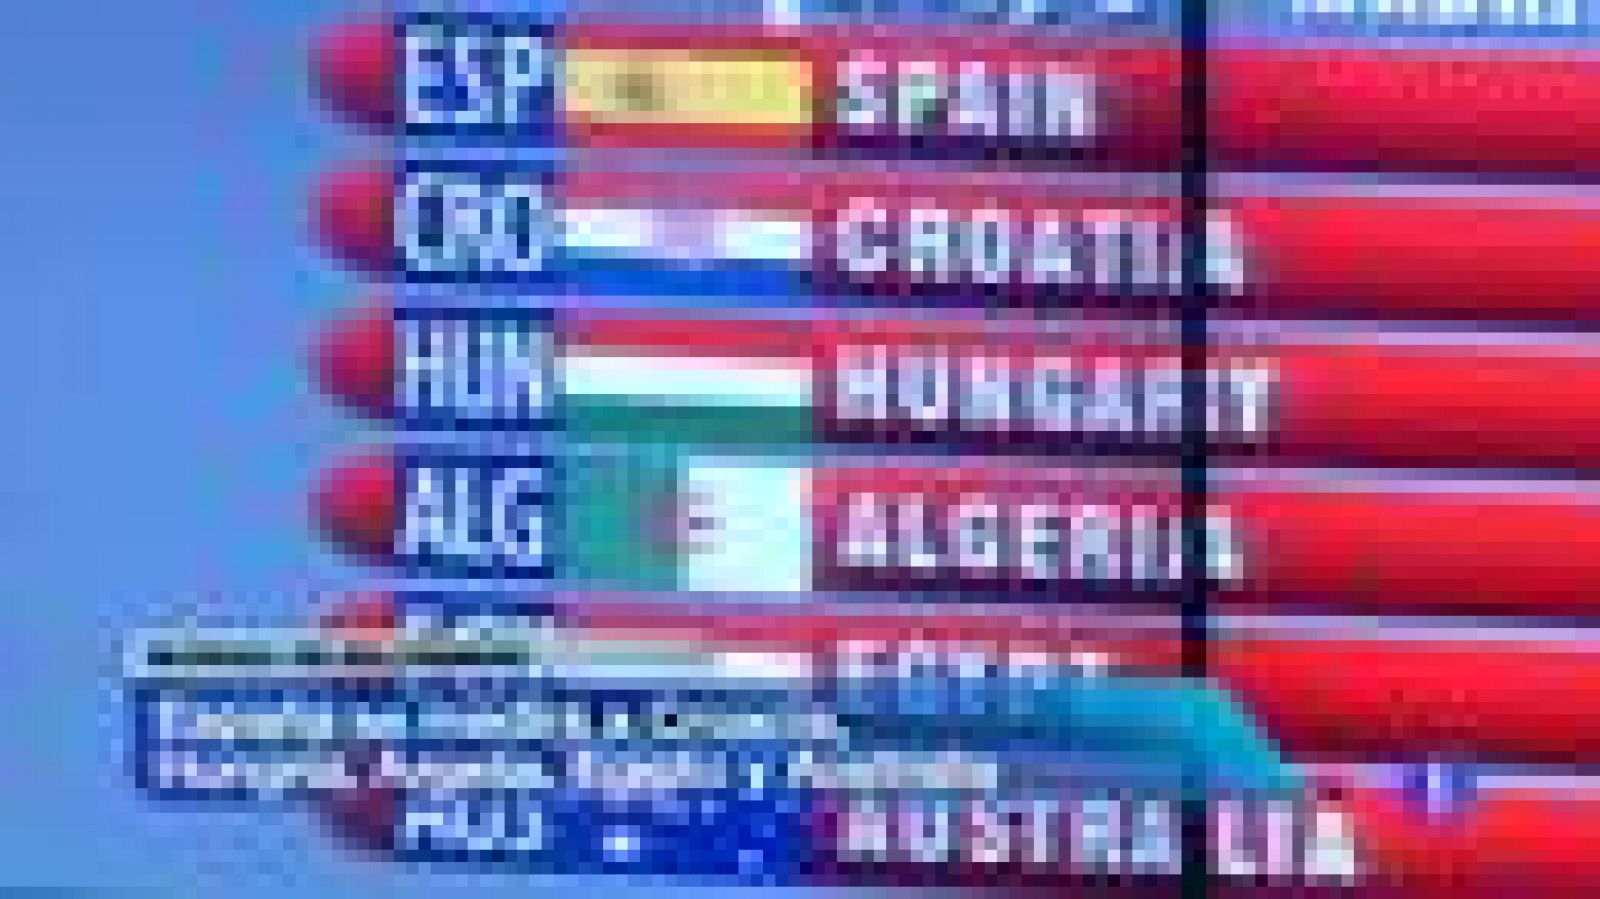 La selección española masculina de balonmano se enfrentará a Croacia, Hungría, Argelia, Egipto y Australia en la primera fase del Campeonato del Mundo 2013, que se celebrará en España.